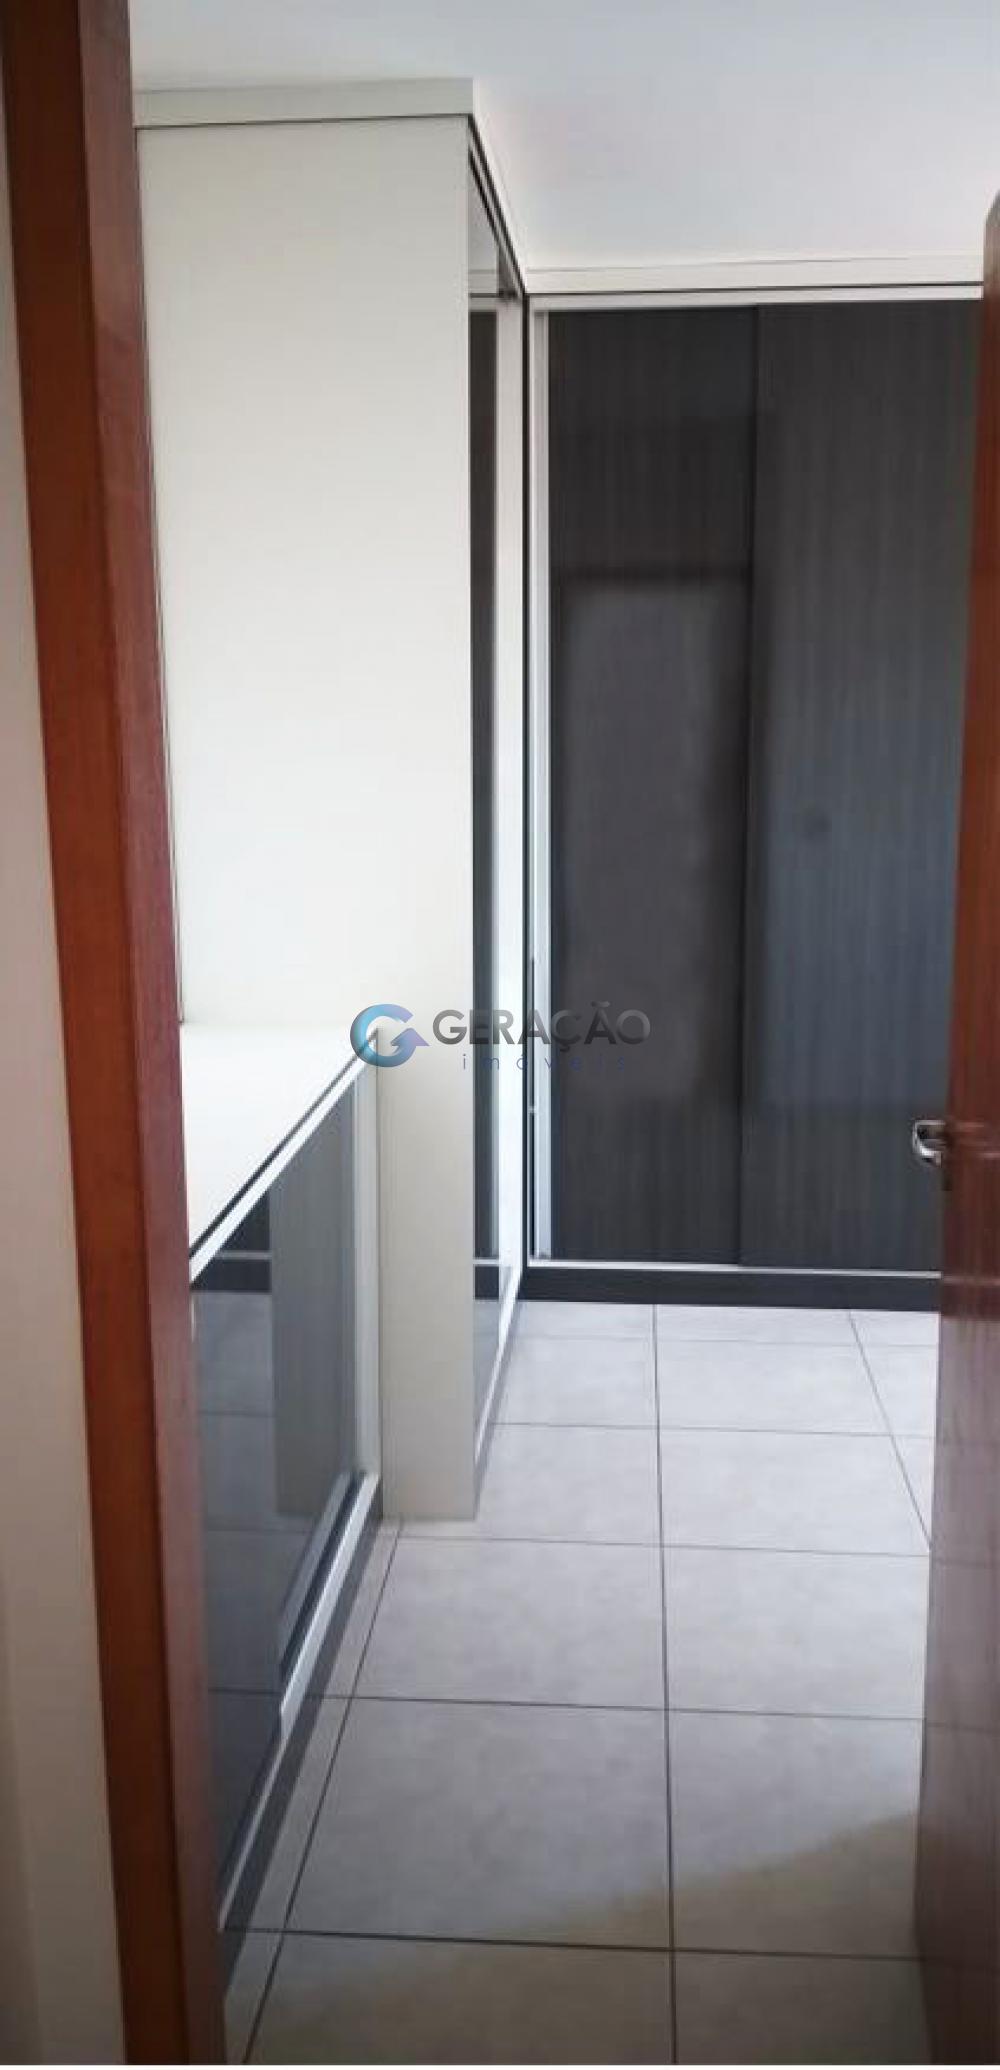 Comprar Apartamento / Flat em São José dos Campos R$ 256.000,00 - Foto 10